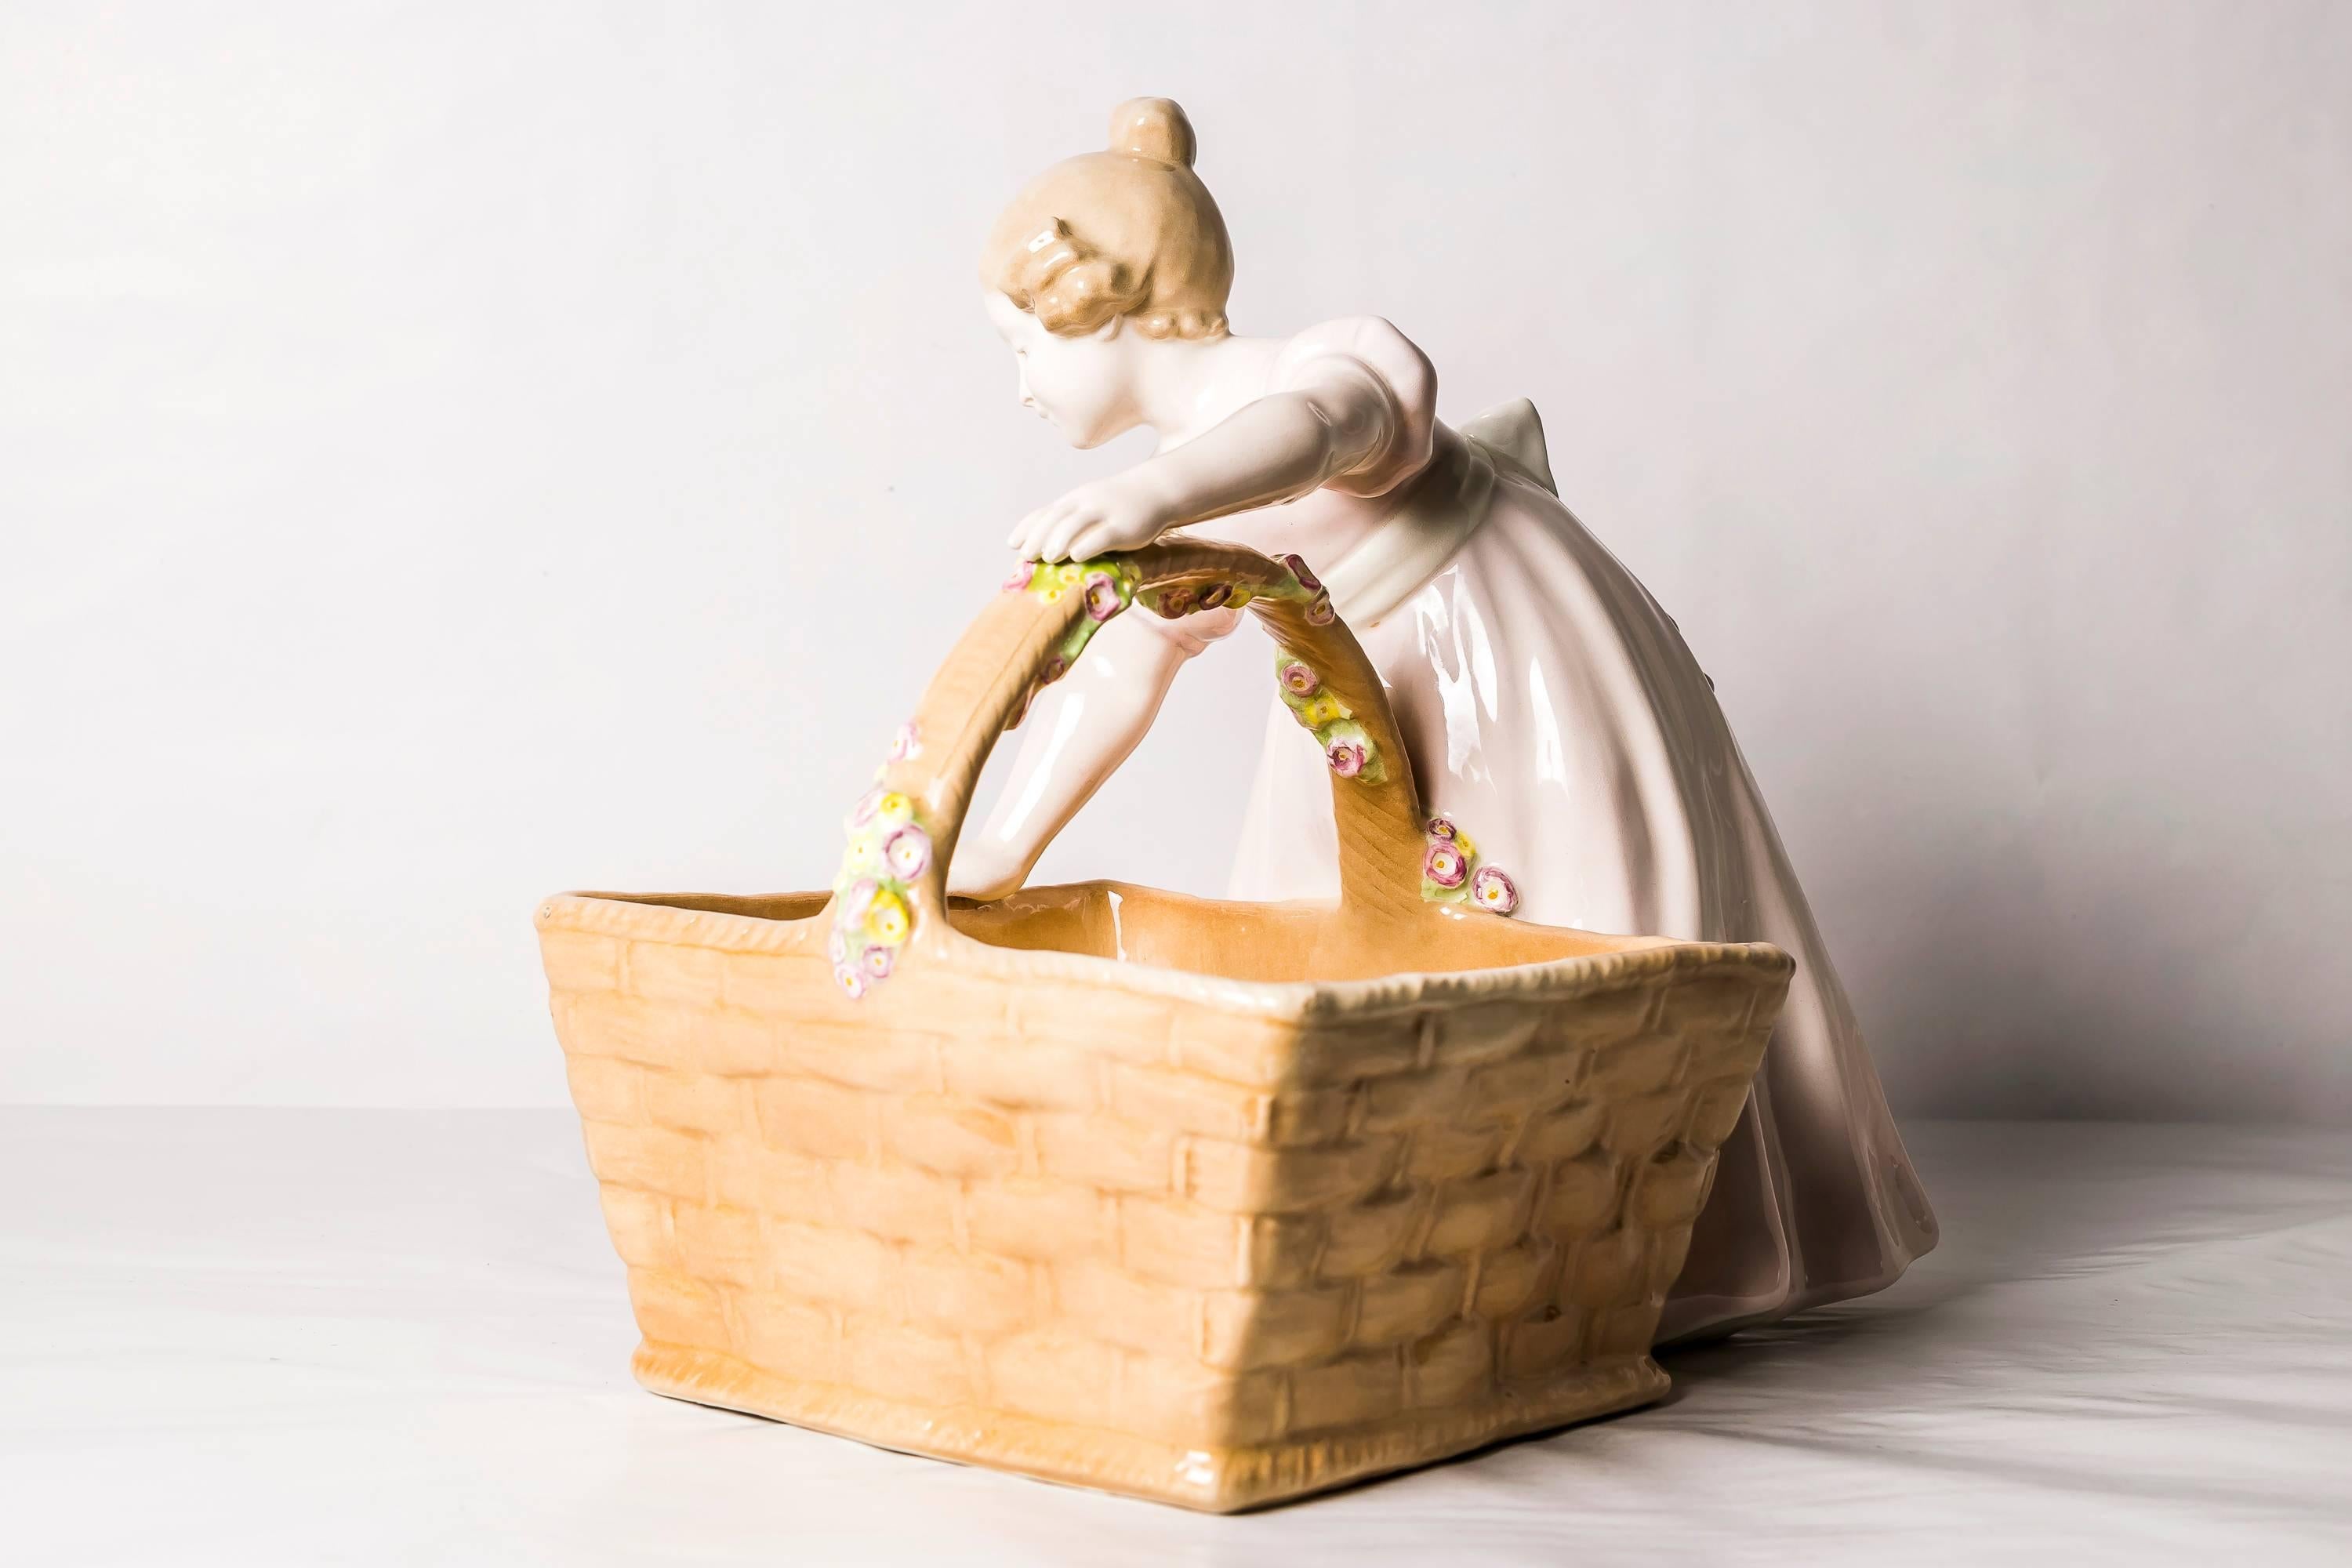 Goldscheider Viennese figure girl with basket
Designer: Perigot
Original condition.